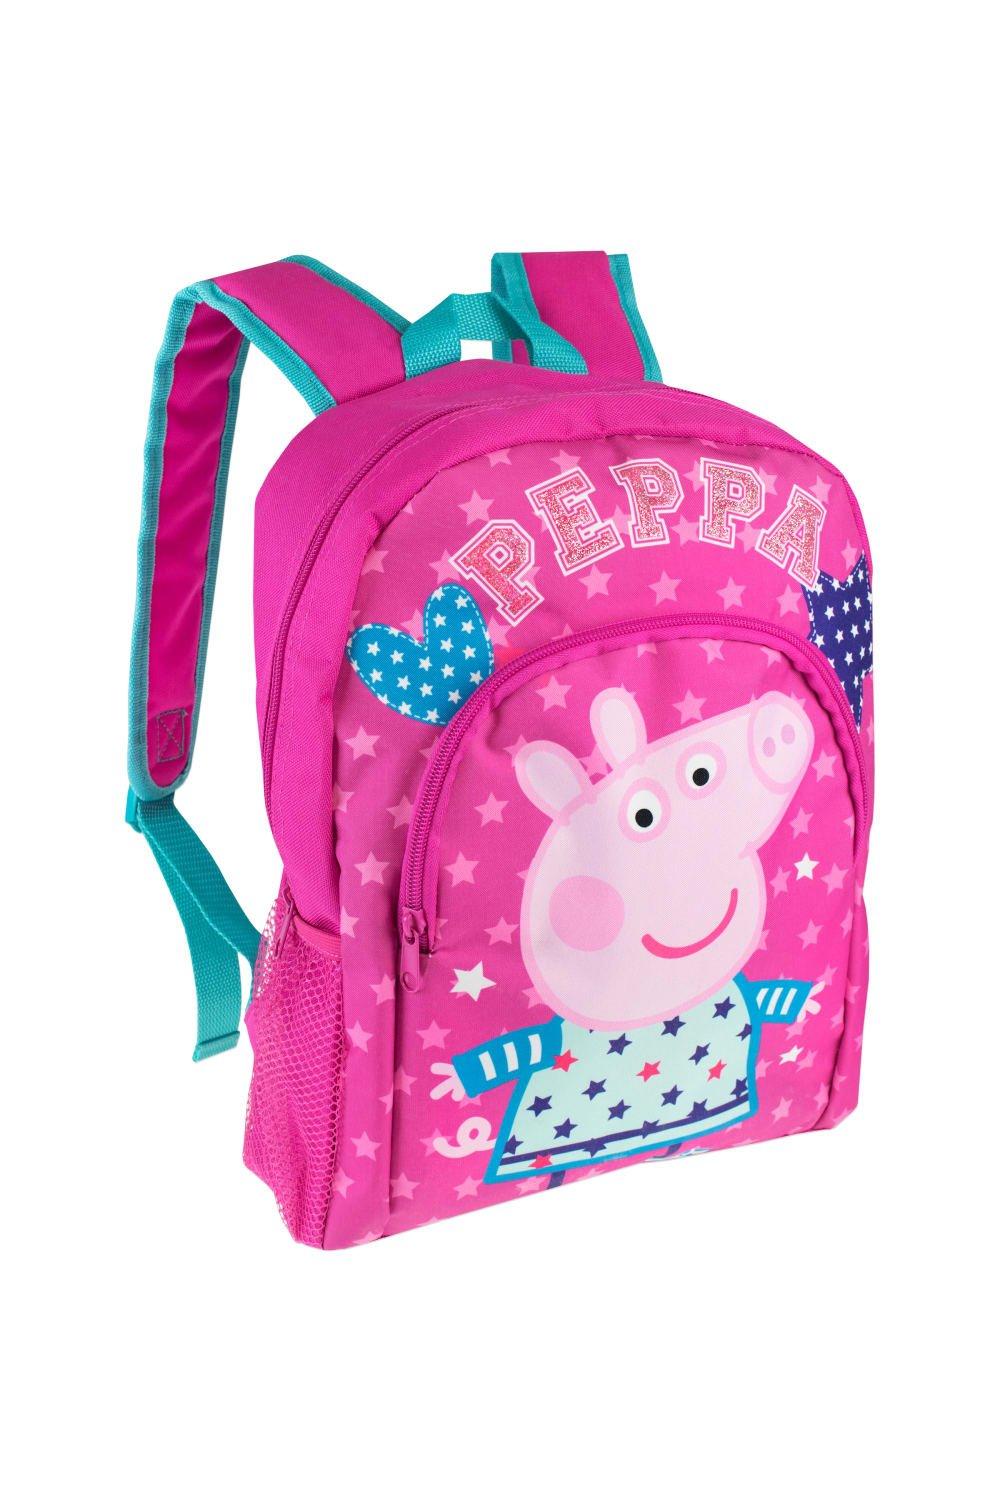 Детский рюкзак Peppa Pig, розовый сумка белая собака с сердечками на фоне неба ярко синий